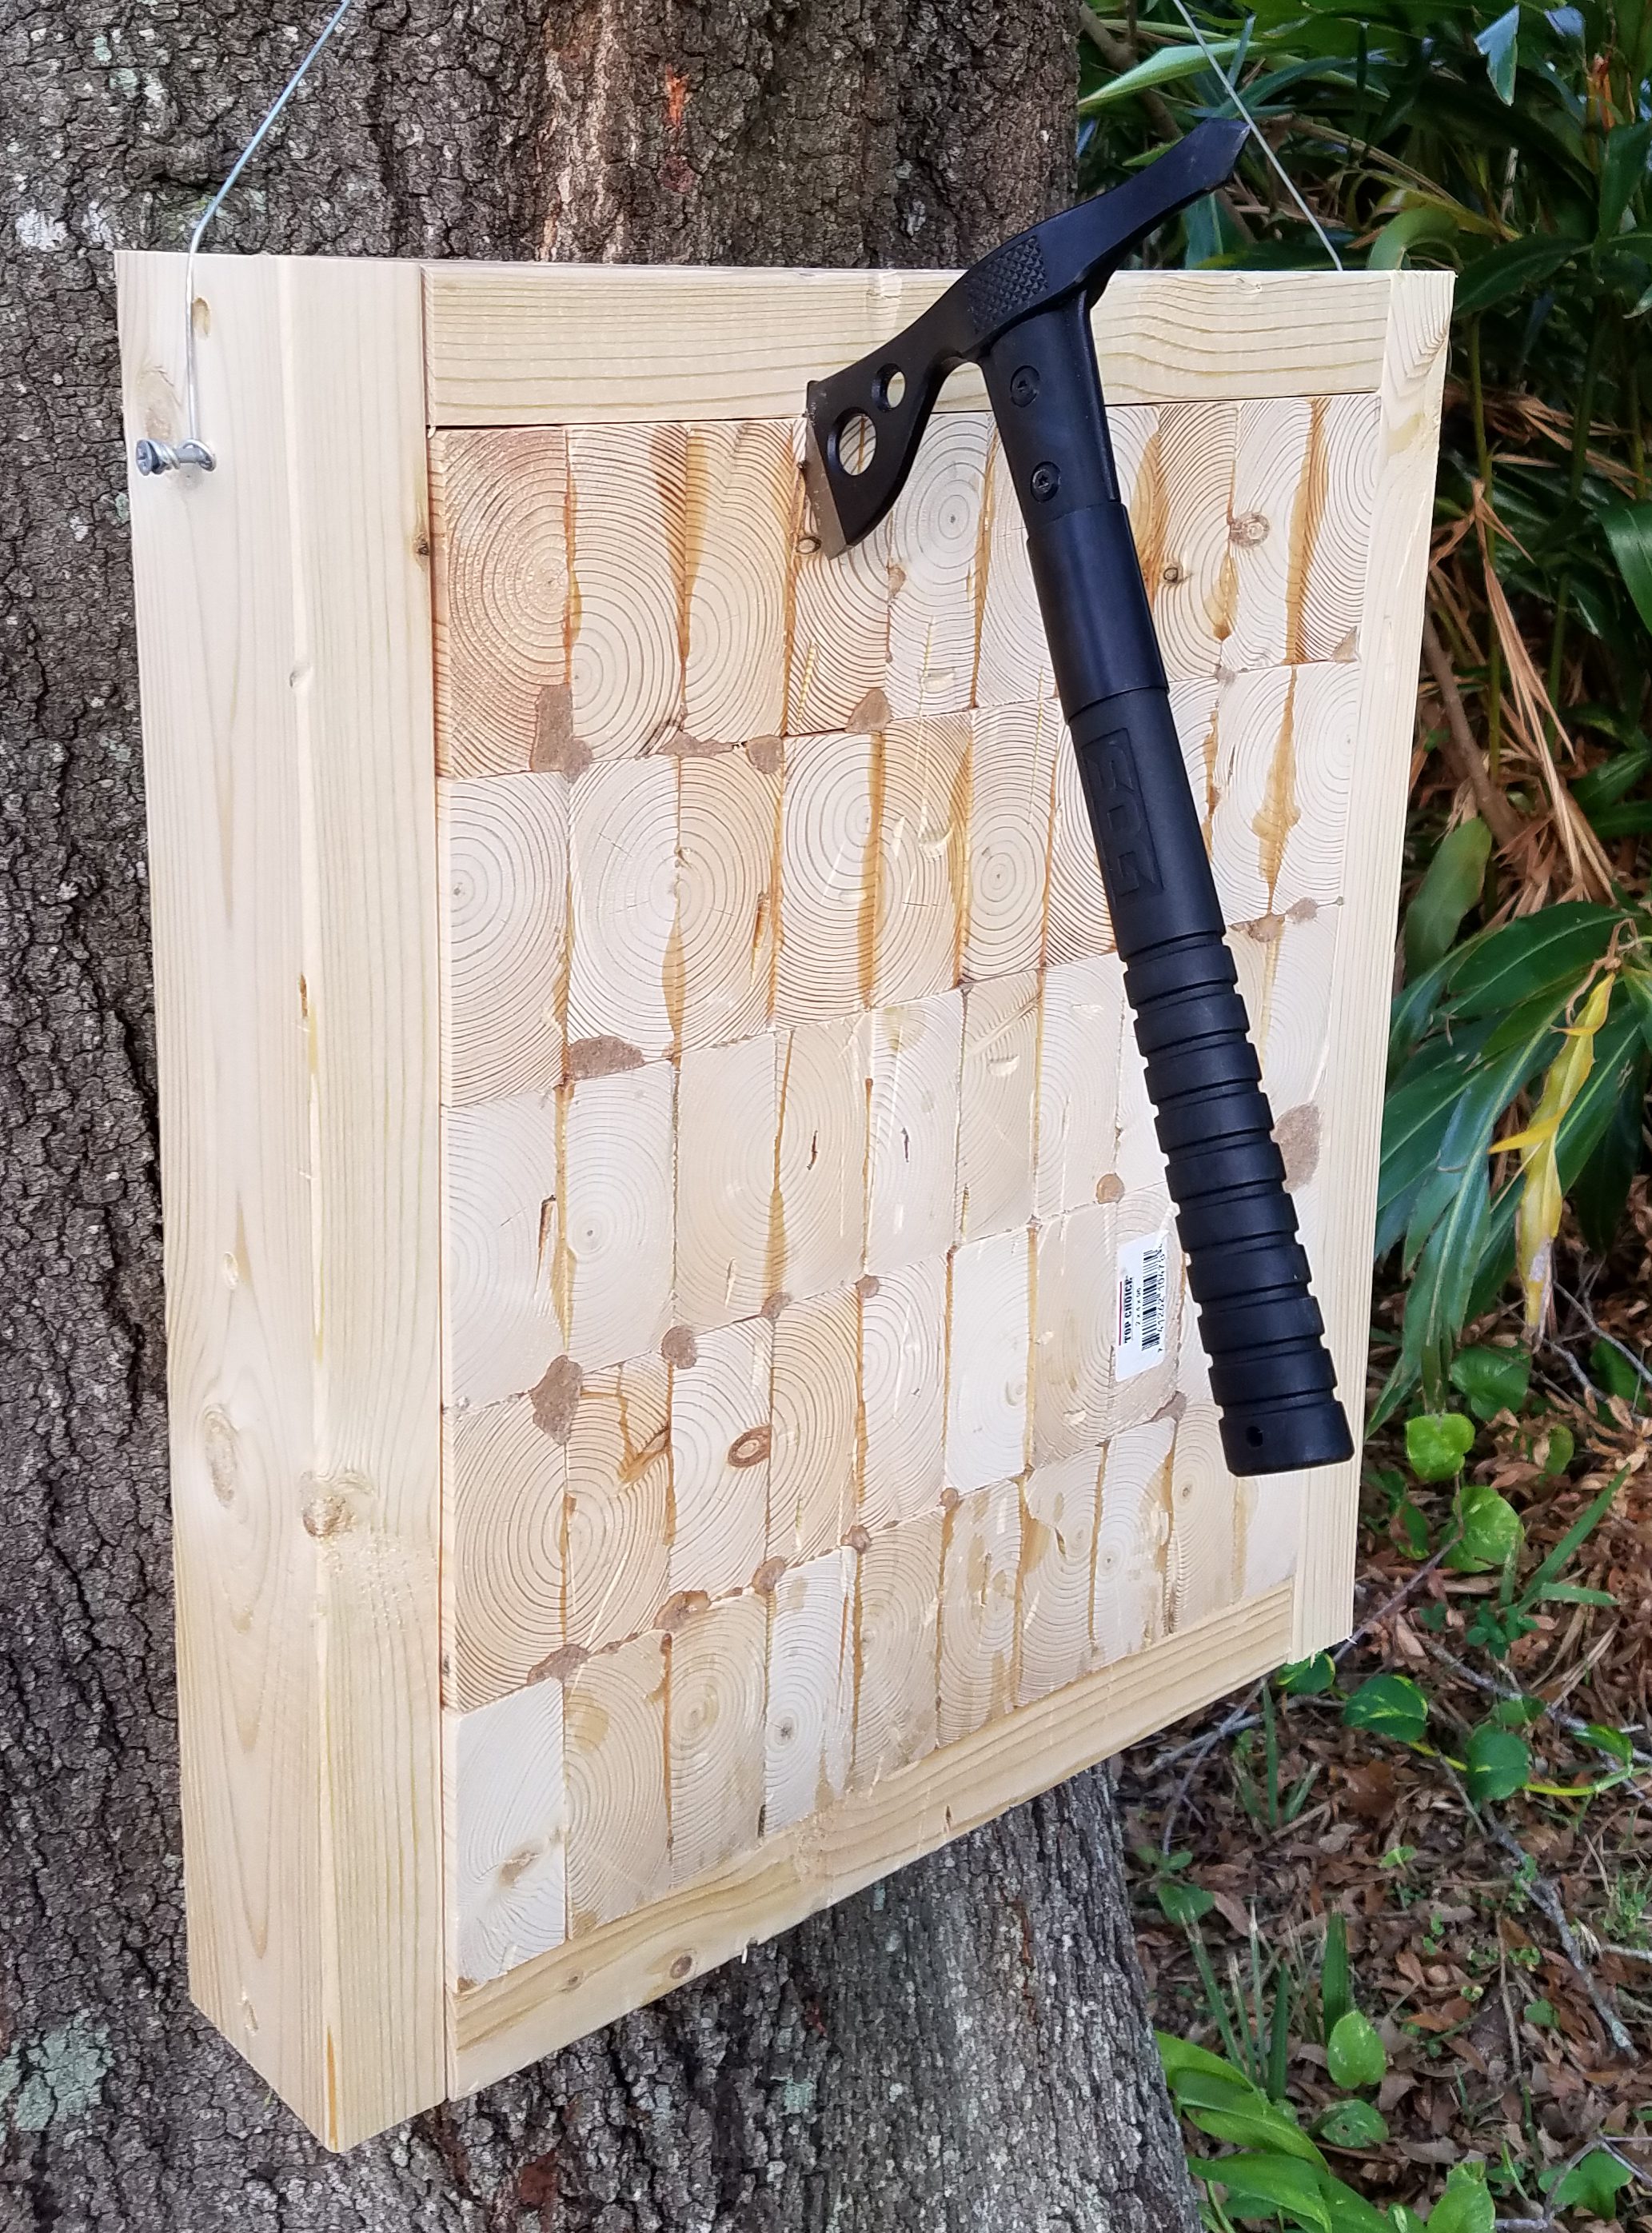 build an axe throwing board